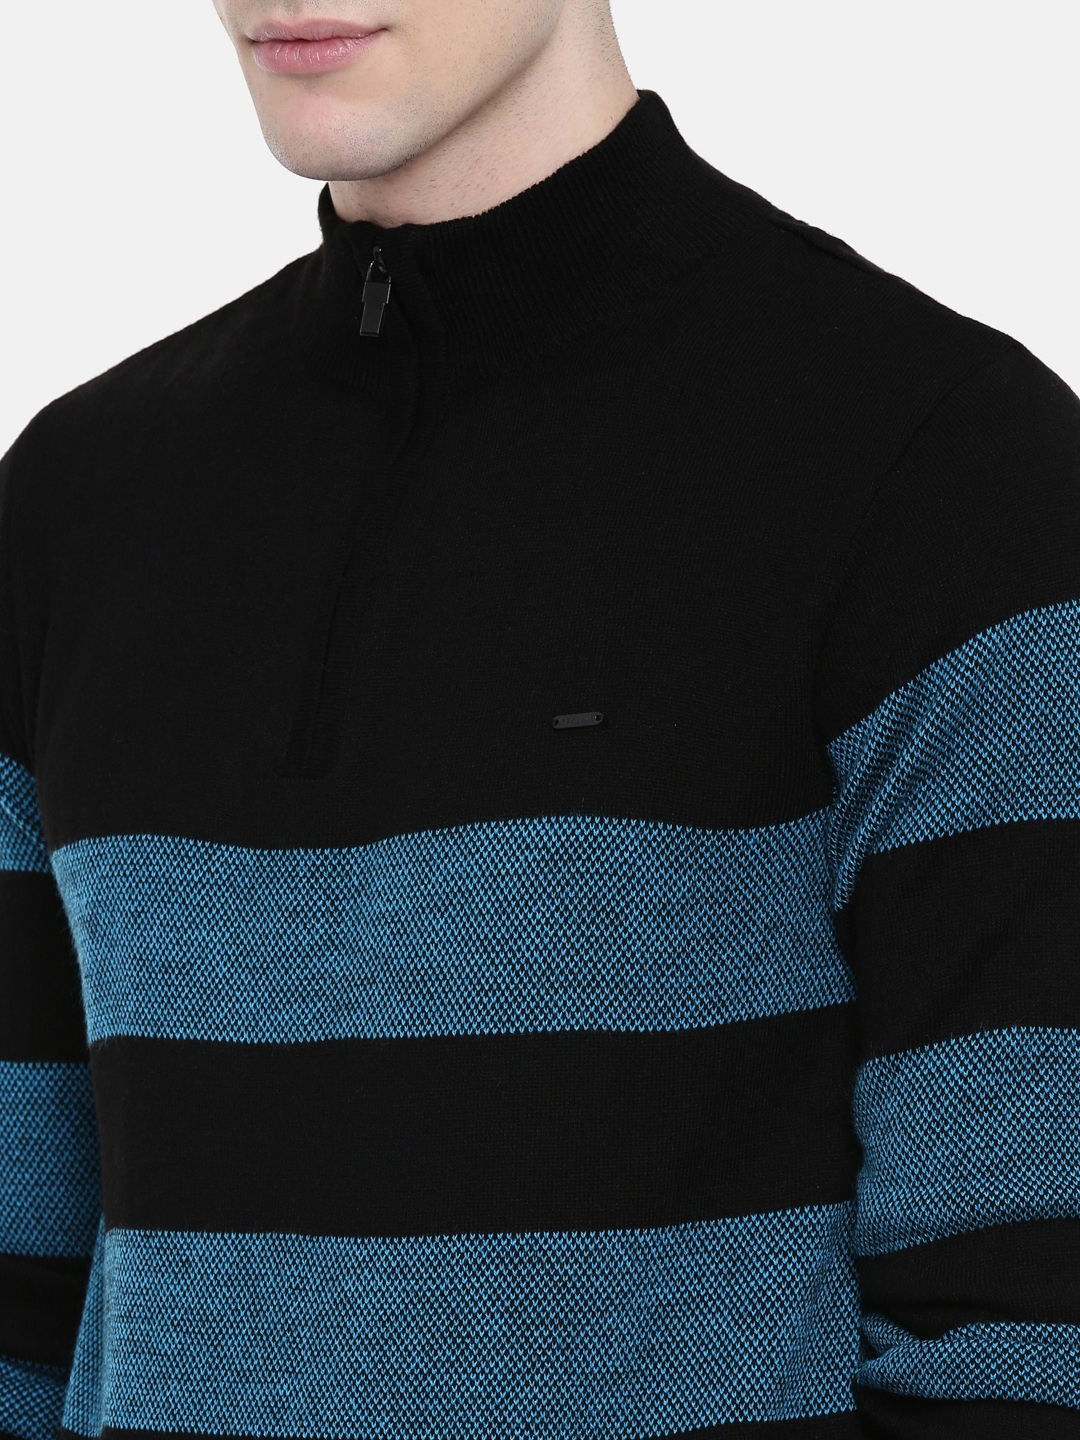 Men's Black Cotton Melange Sweaters